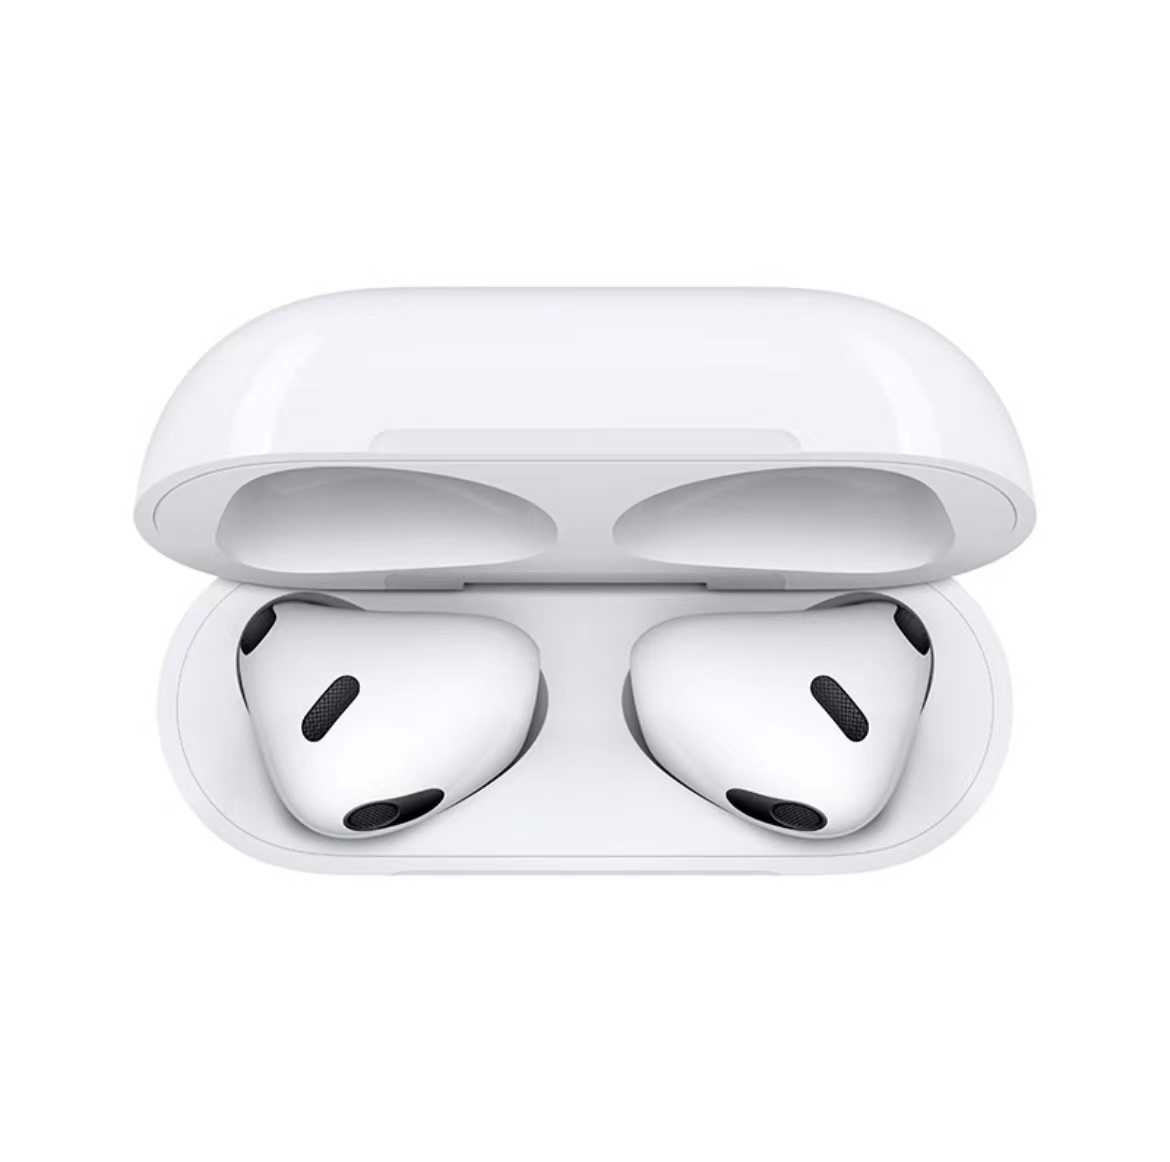 Apple AirPods Pro (第二代) 搭配 MagSafe 充電盒 (USB-C) 無線藍牙耳機